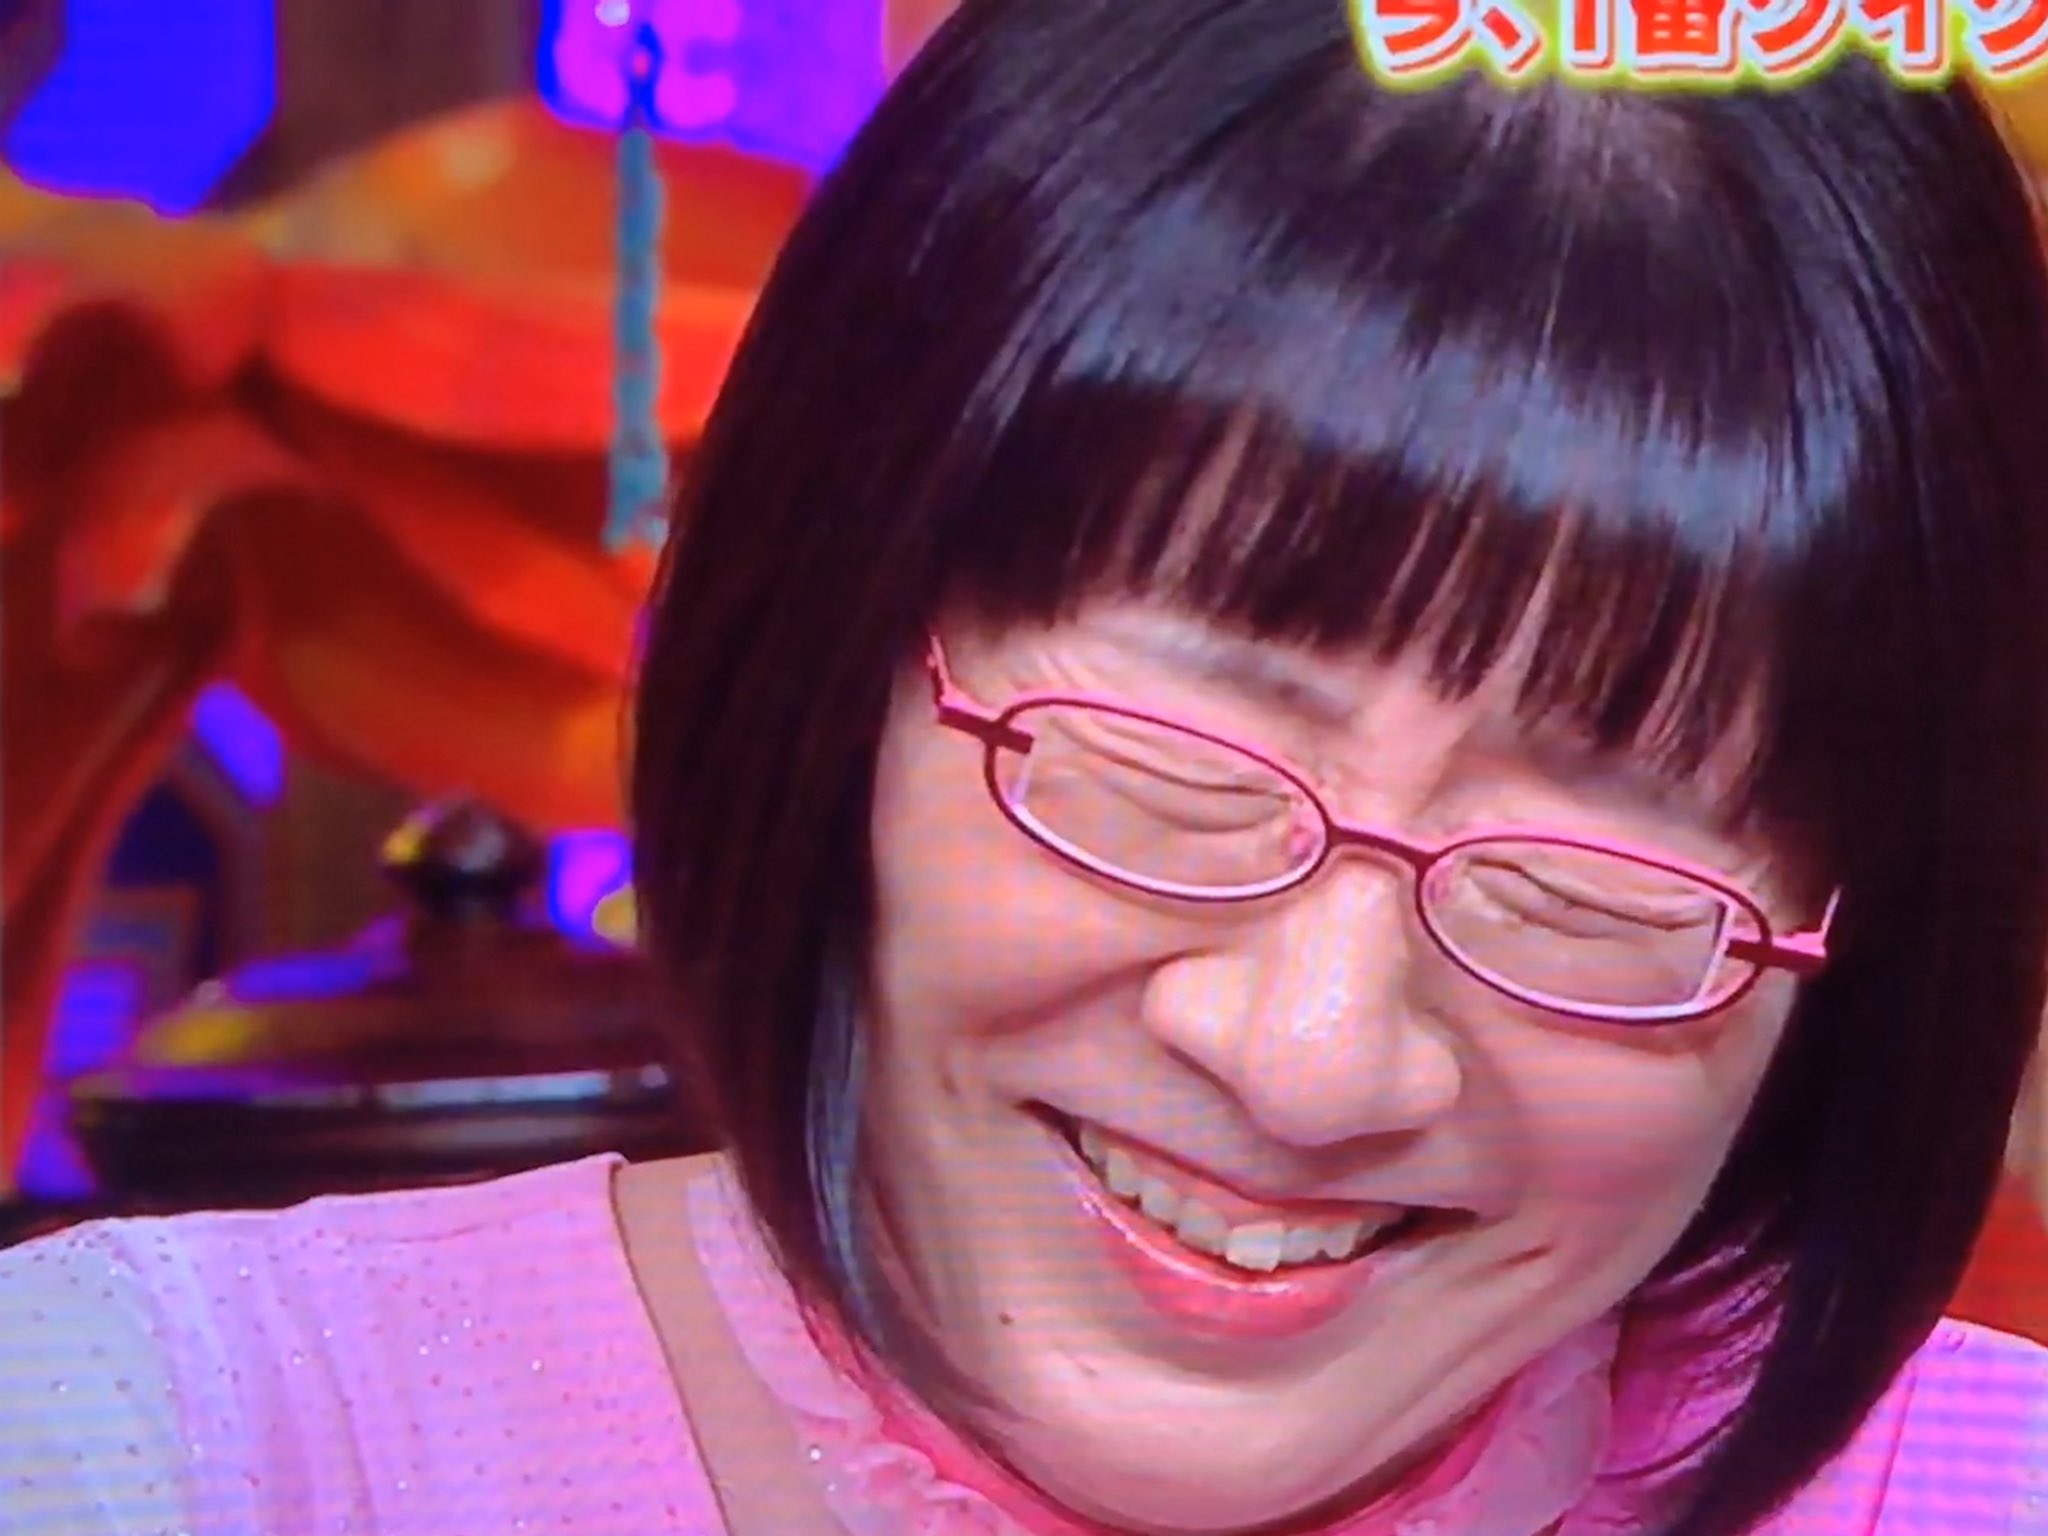 山田 メガネ 11 25 なぜかrobo太出勤 わたしのすきな メガネの芸能人 のおひとりである 阿佐ヶ谷姉妹 のお姉さま渡辺江里子さん 強度近視さんがテレビに出る ことと トレードマークのオーバルフレーム をかけることの 折衷案として レンズ